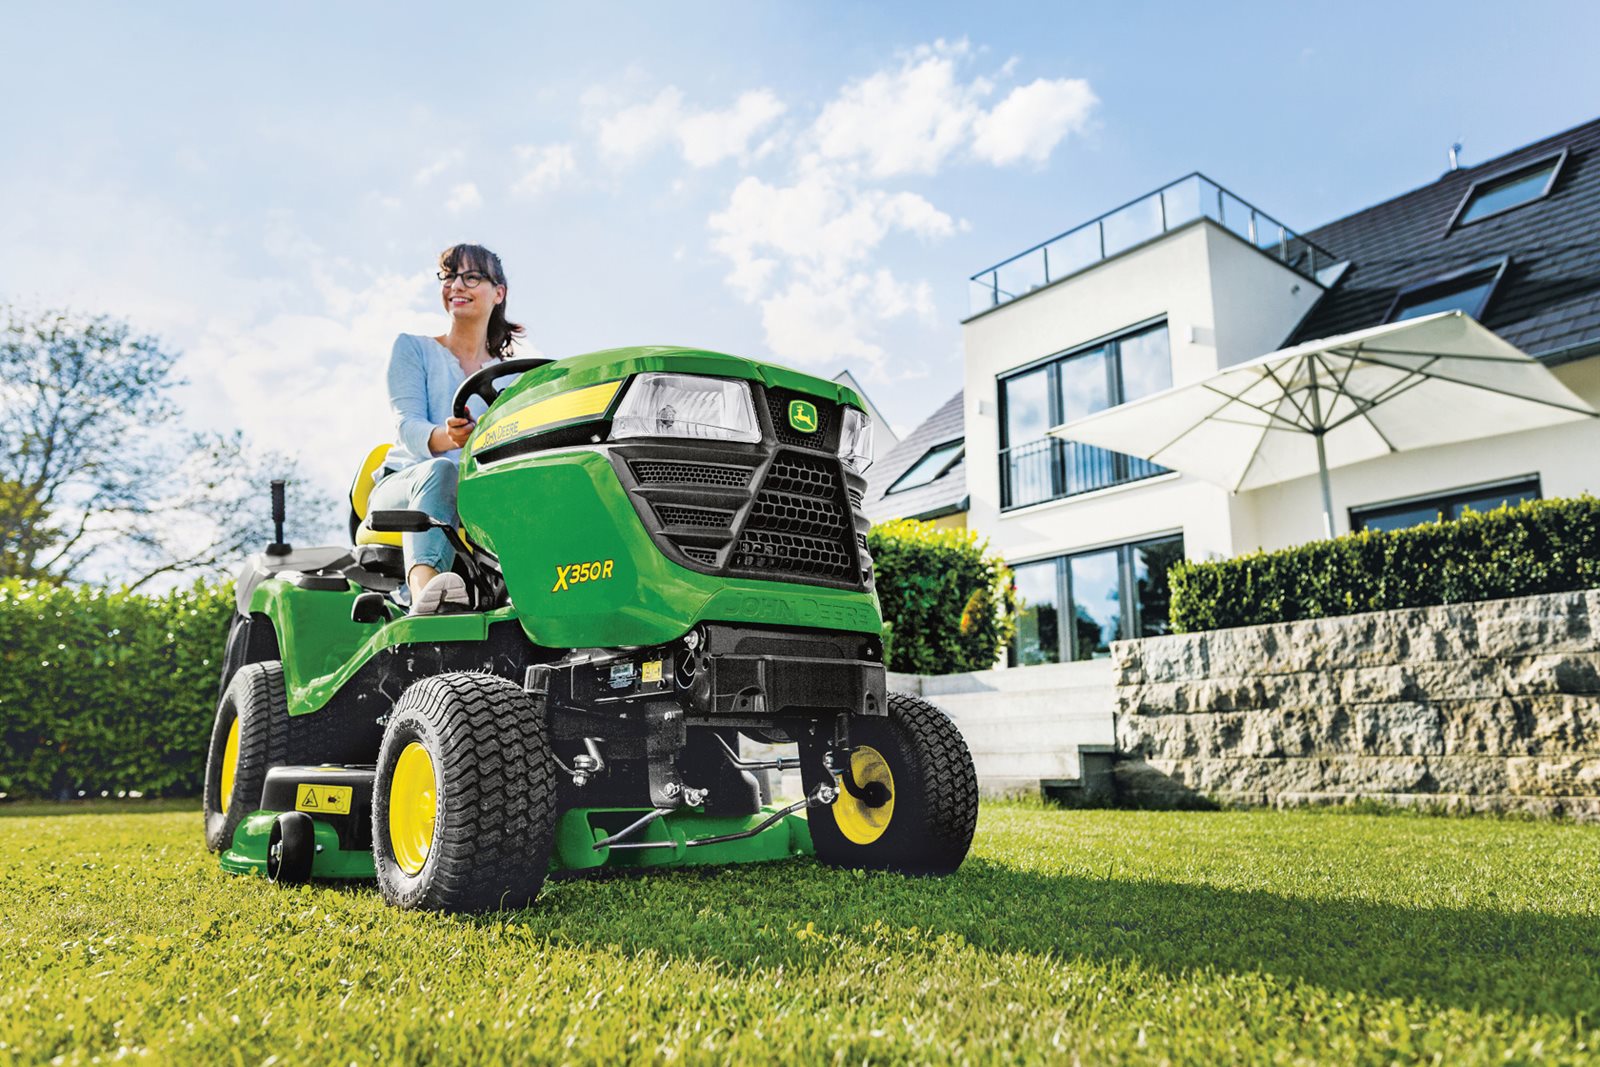 Zahradní traktor John Deeere X350R - snadná manipulace, skvělý trávník